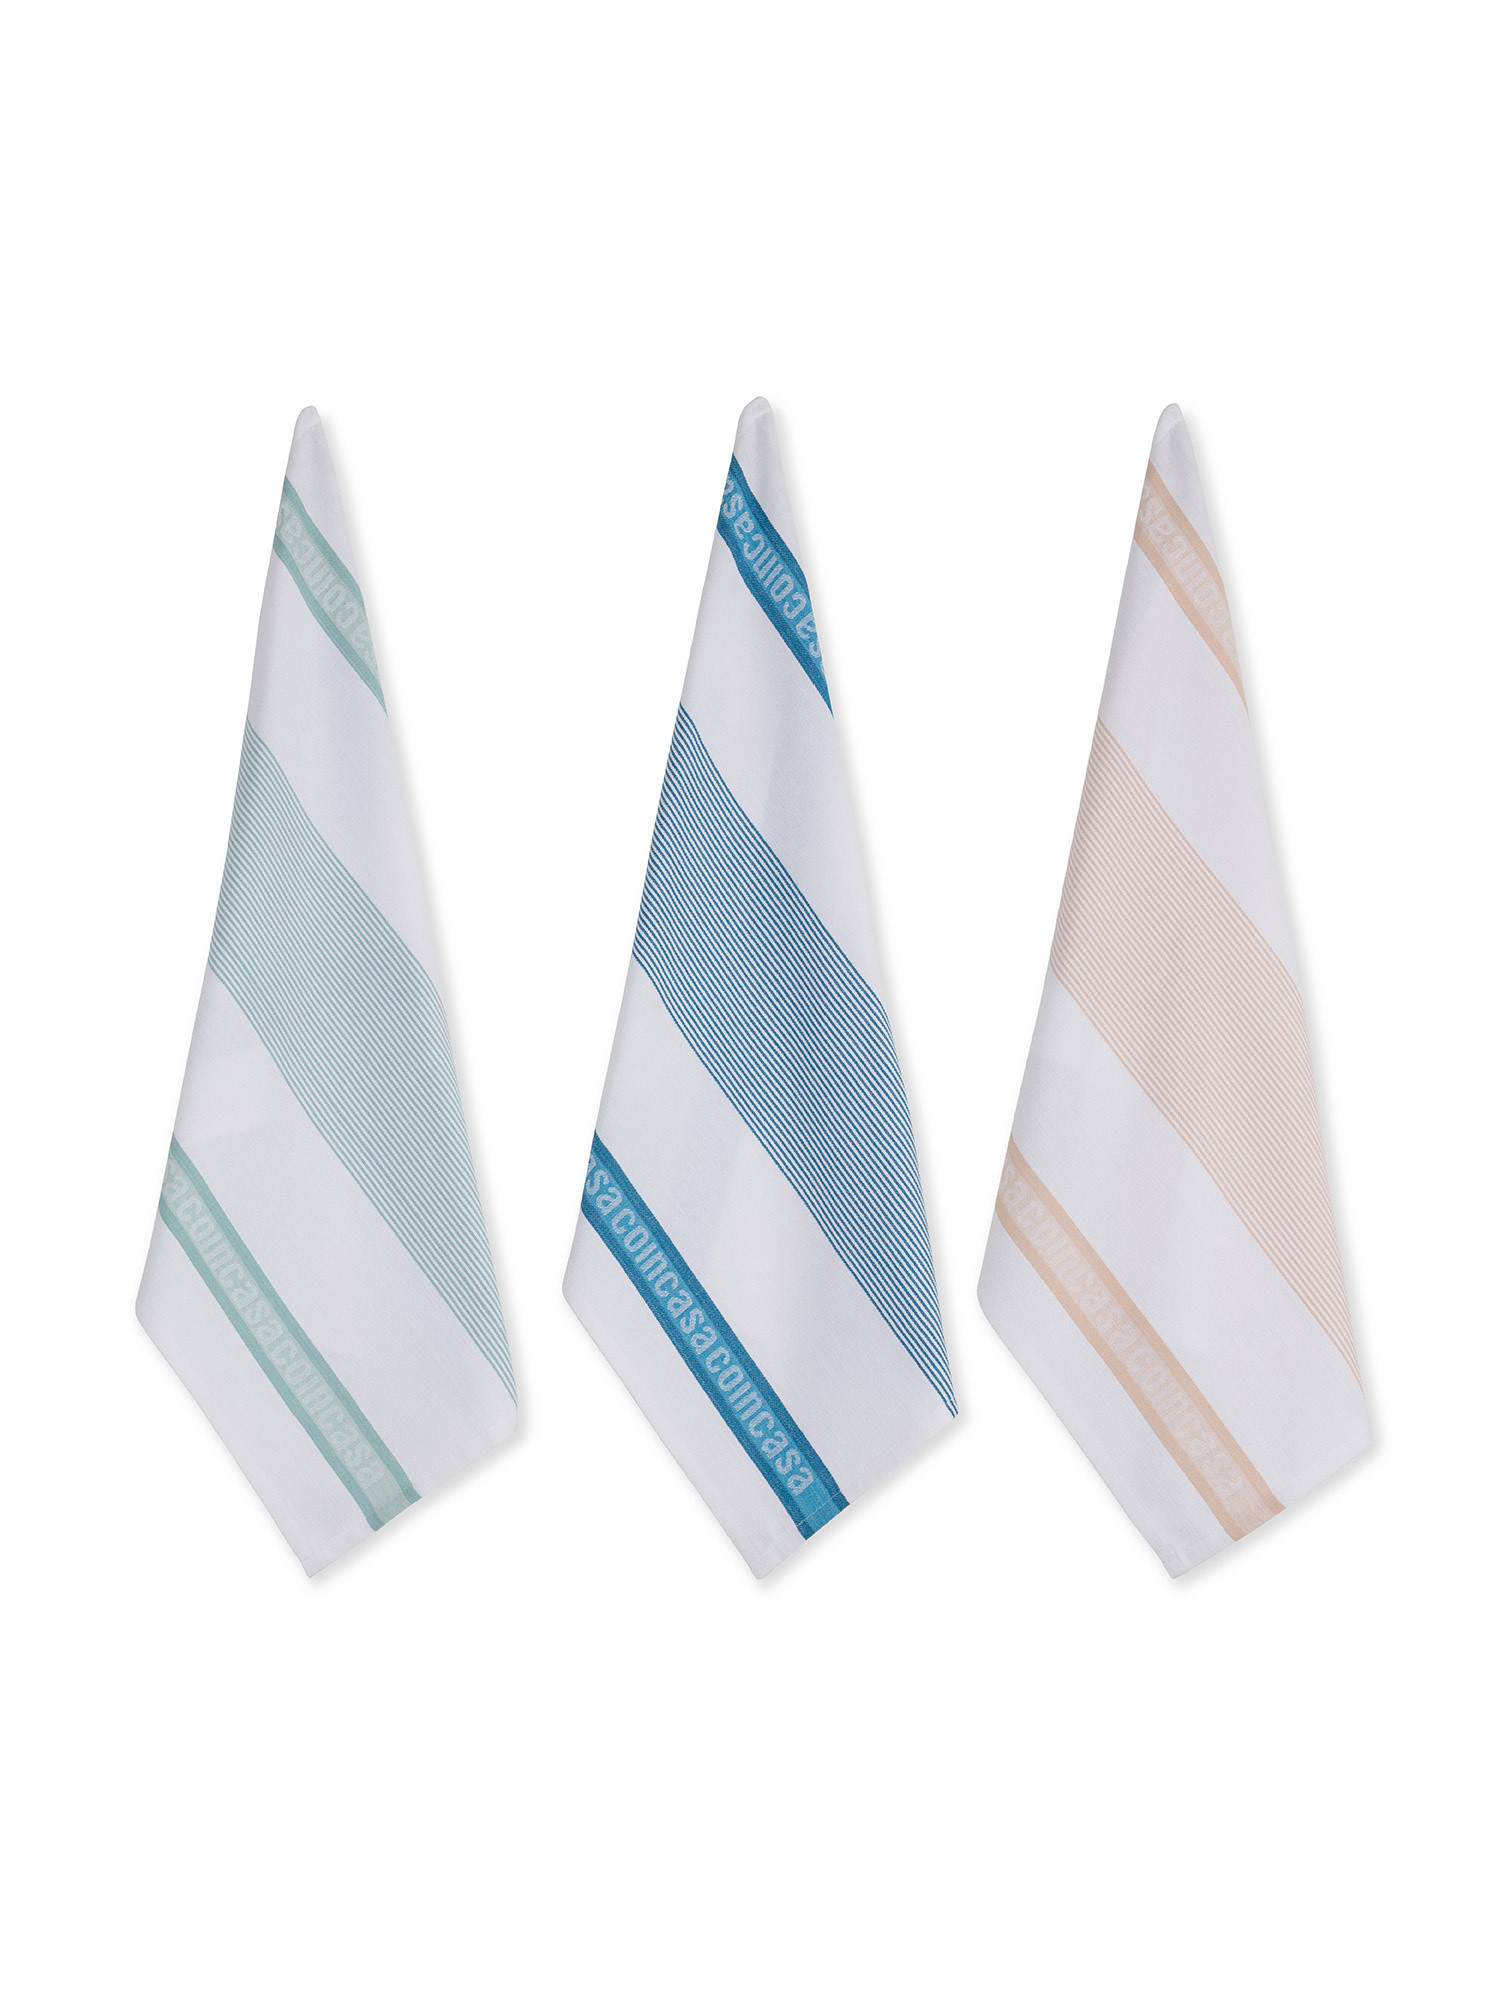 Set of 3 Coincasa jacquard cotton tea towels, Multicolor, large image number 0